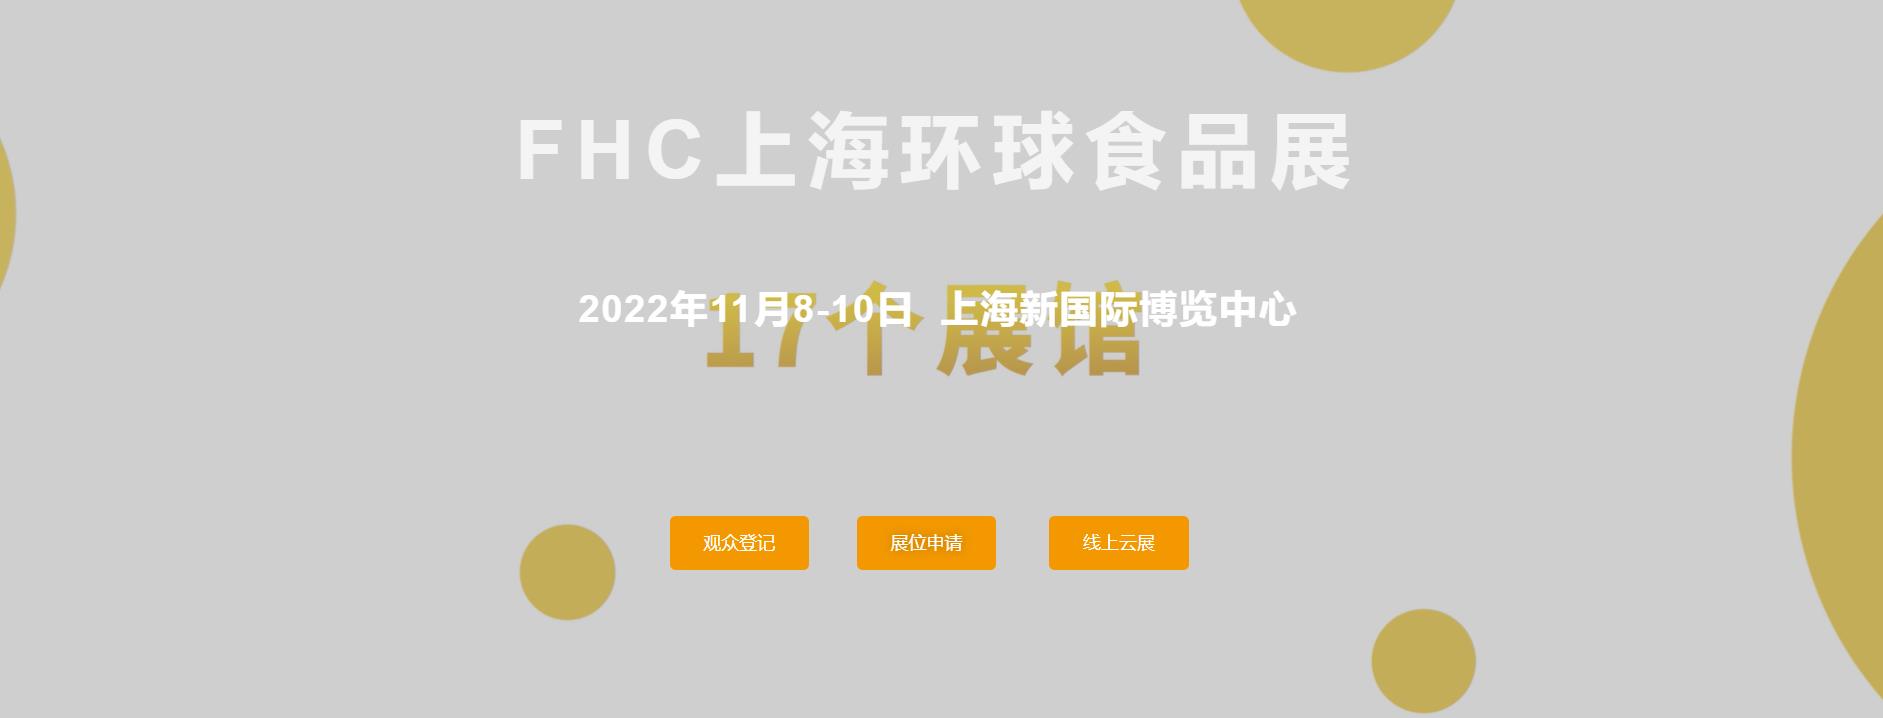 日本国际饮料展览会 上海市2022环球食品展会 上海市2022环球食品展FHC